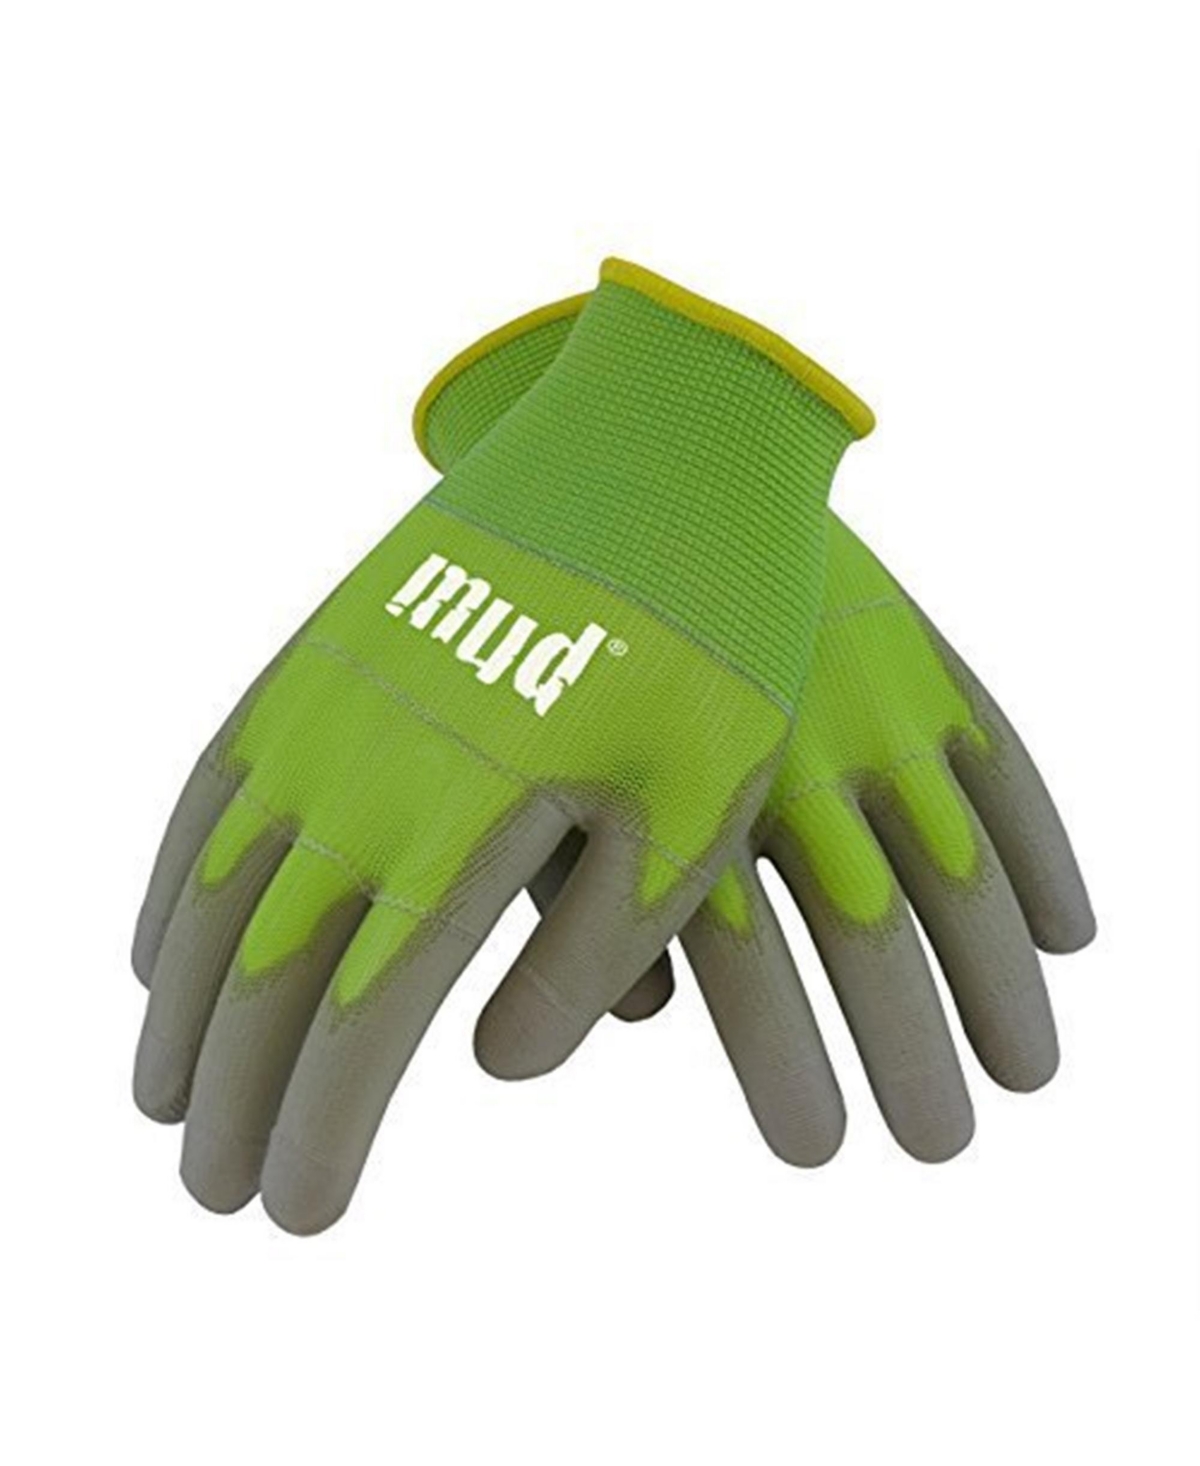 Mud 028A M Smart Mud Garden Glove, Medium, Apple - Green